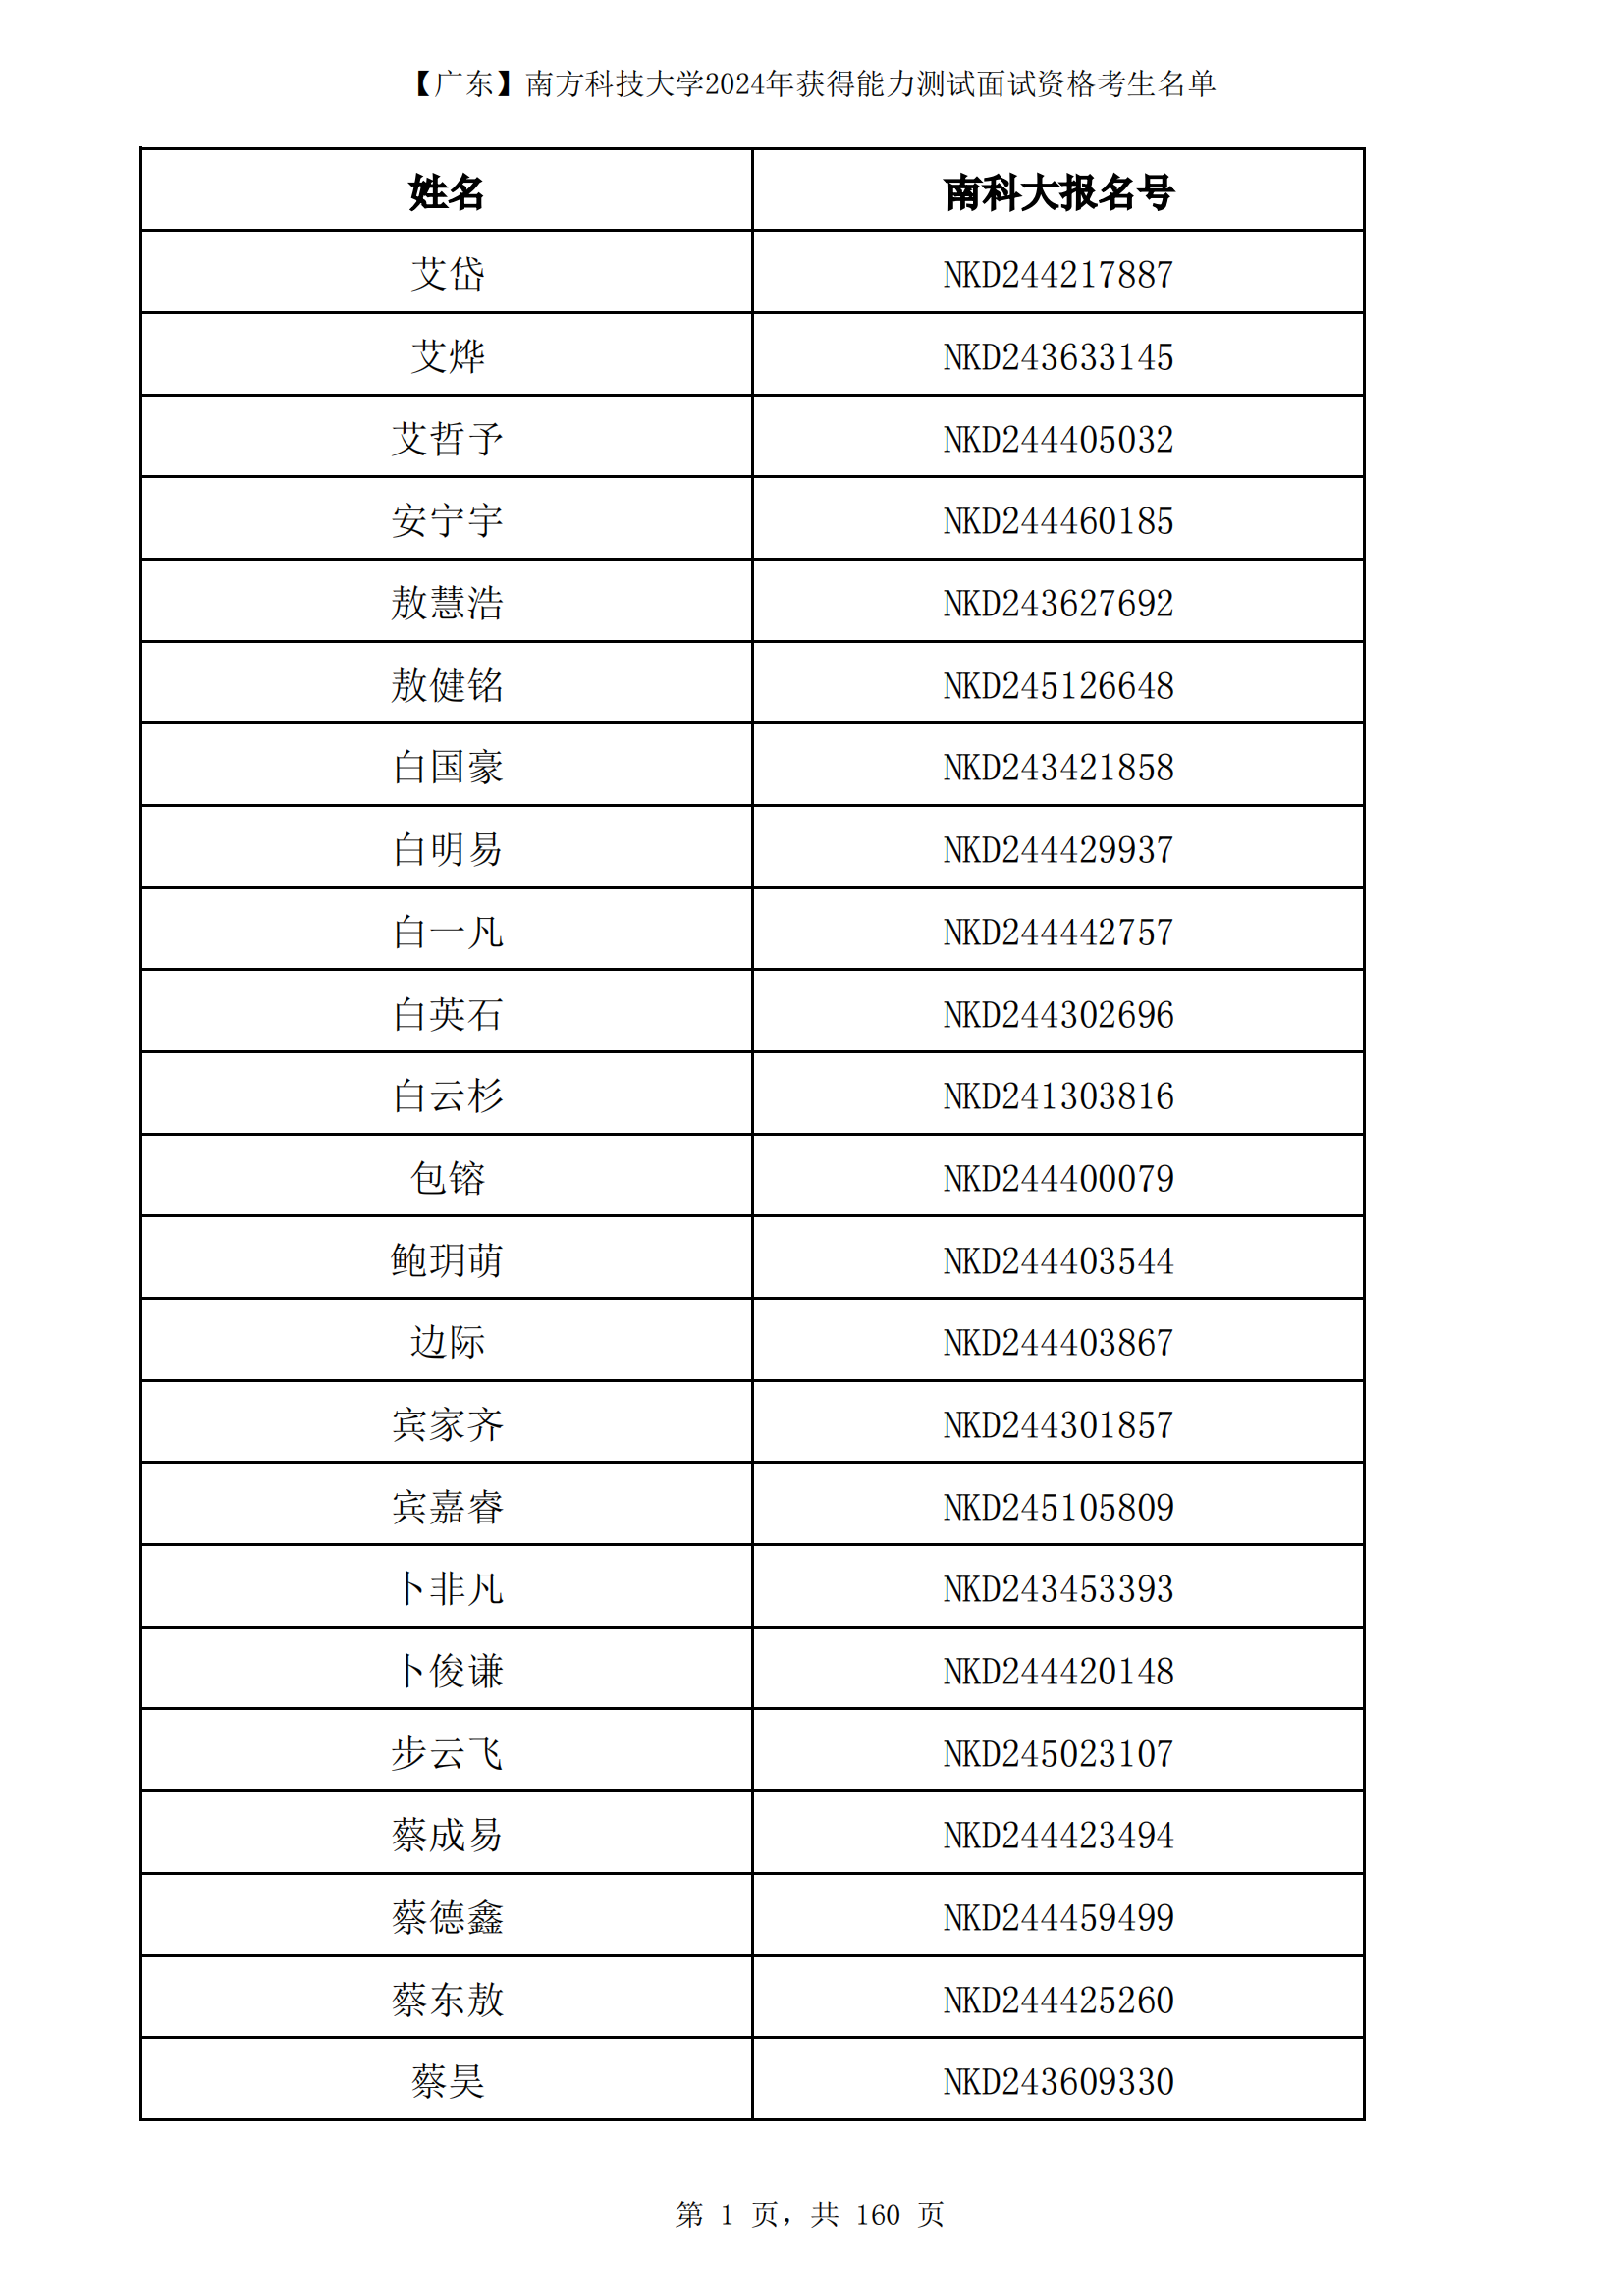 广东省南方科技大学2024年综合评价面试资格考生名单